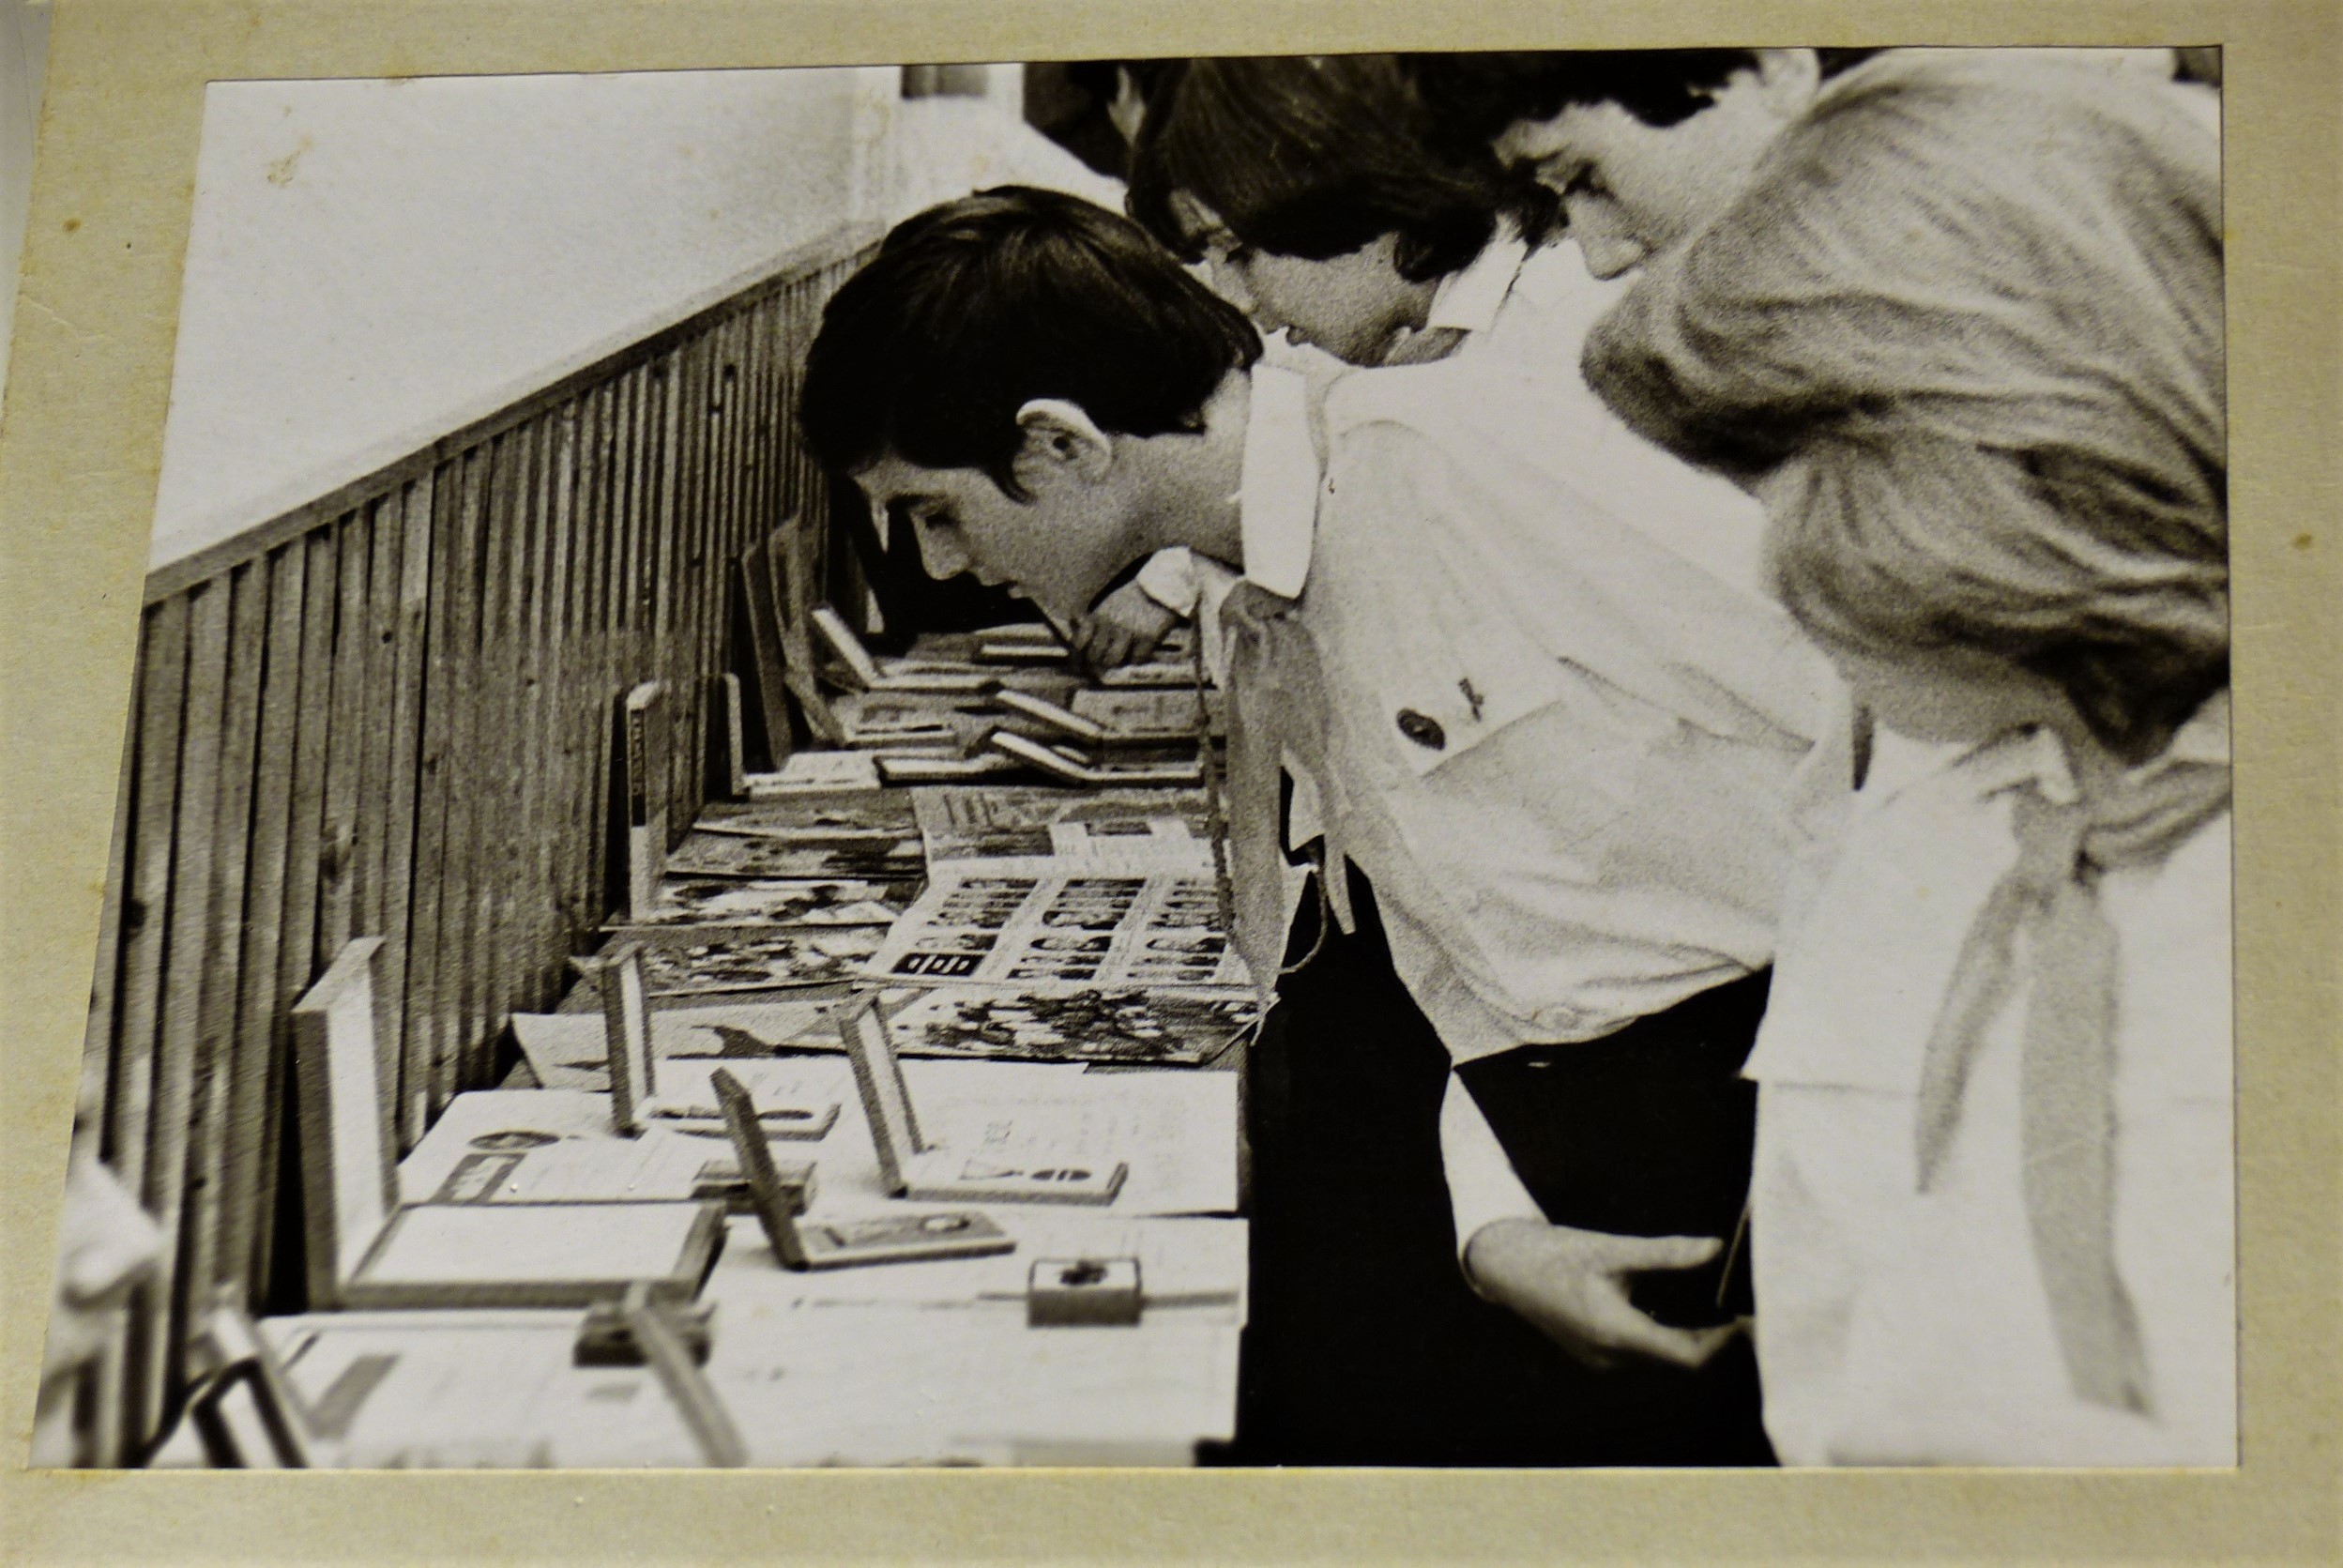 Tapolcai munkásőr emlékkiállítás 1981 (Tapolcai Városi Múzeum CC BY-NC-SA)